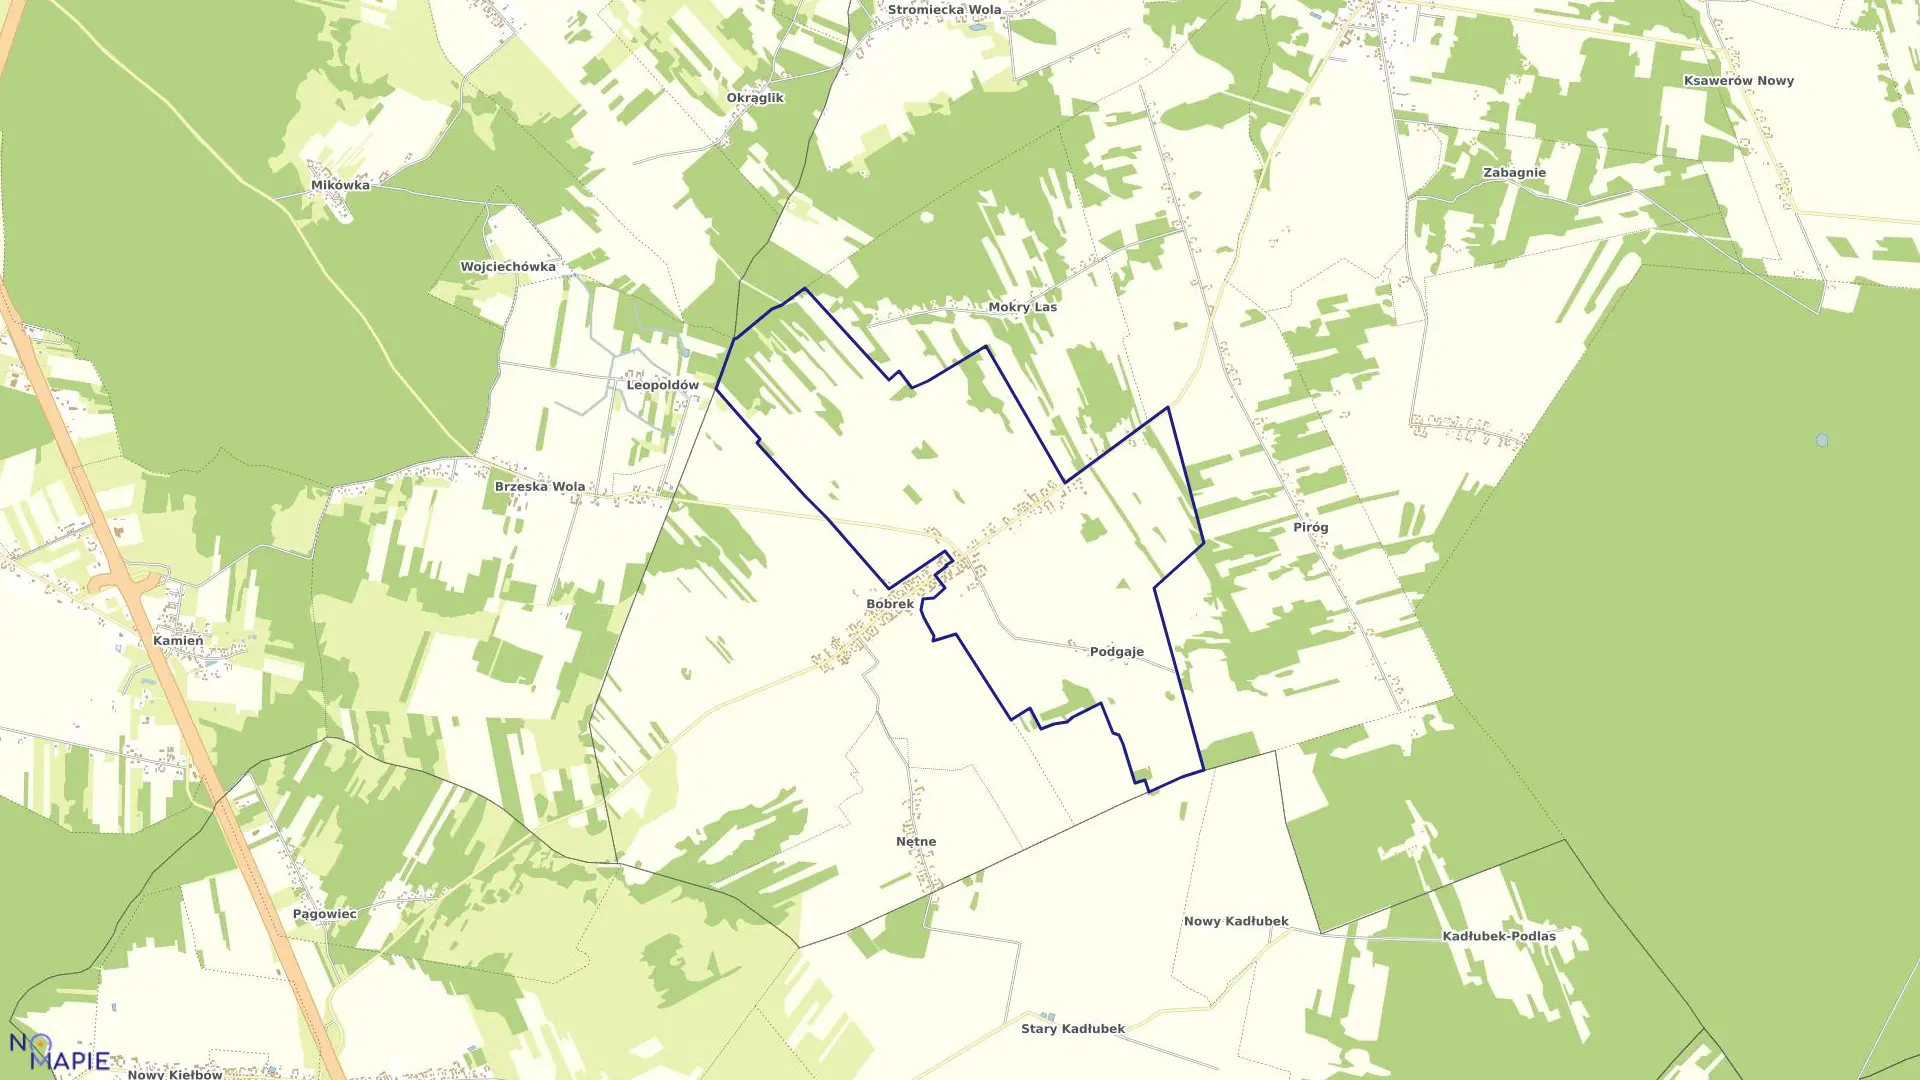 Mapa obrębu KOLONIA BOBREK w gminie Stromiec